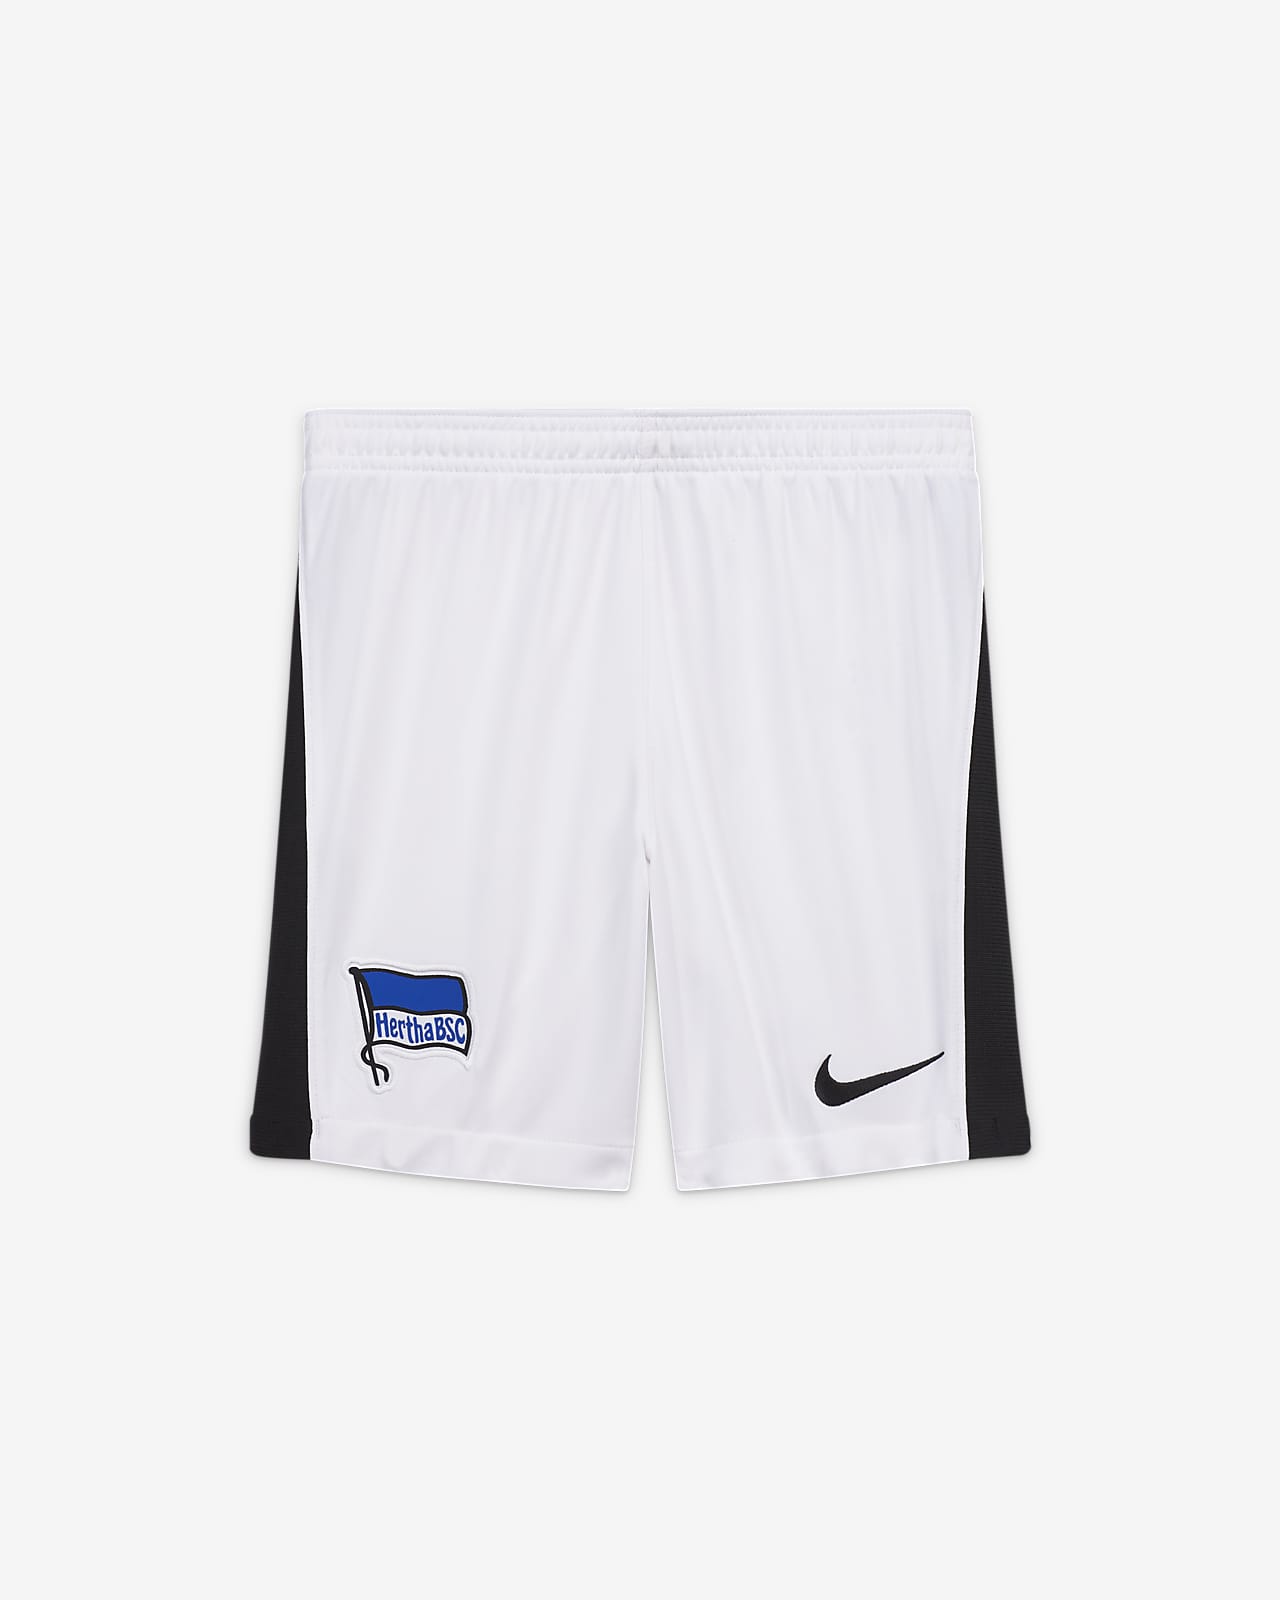 nike shorts 2020